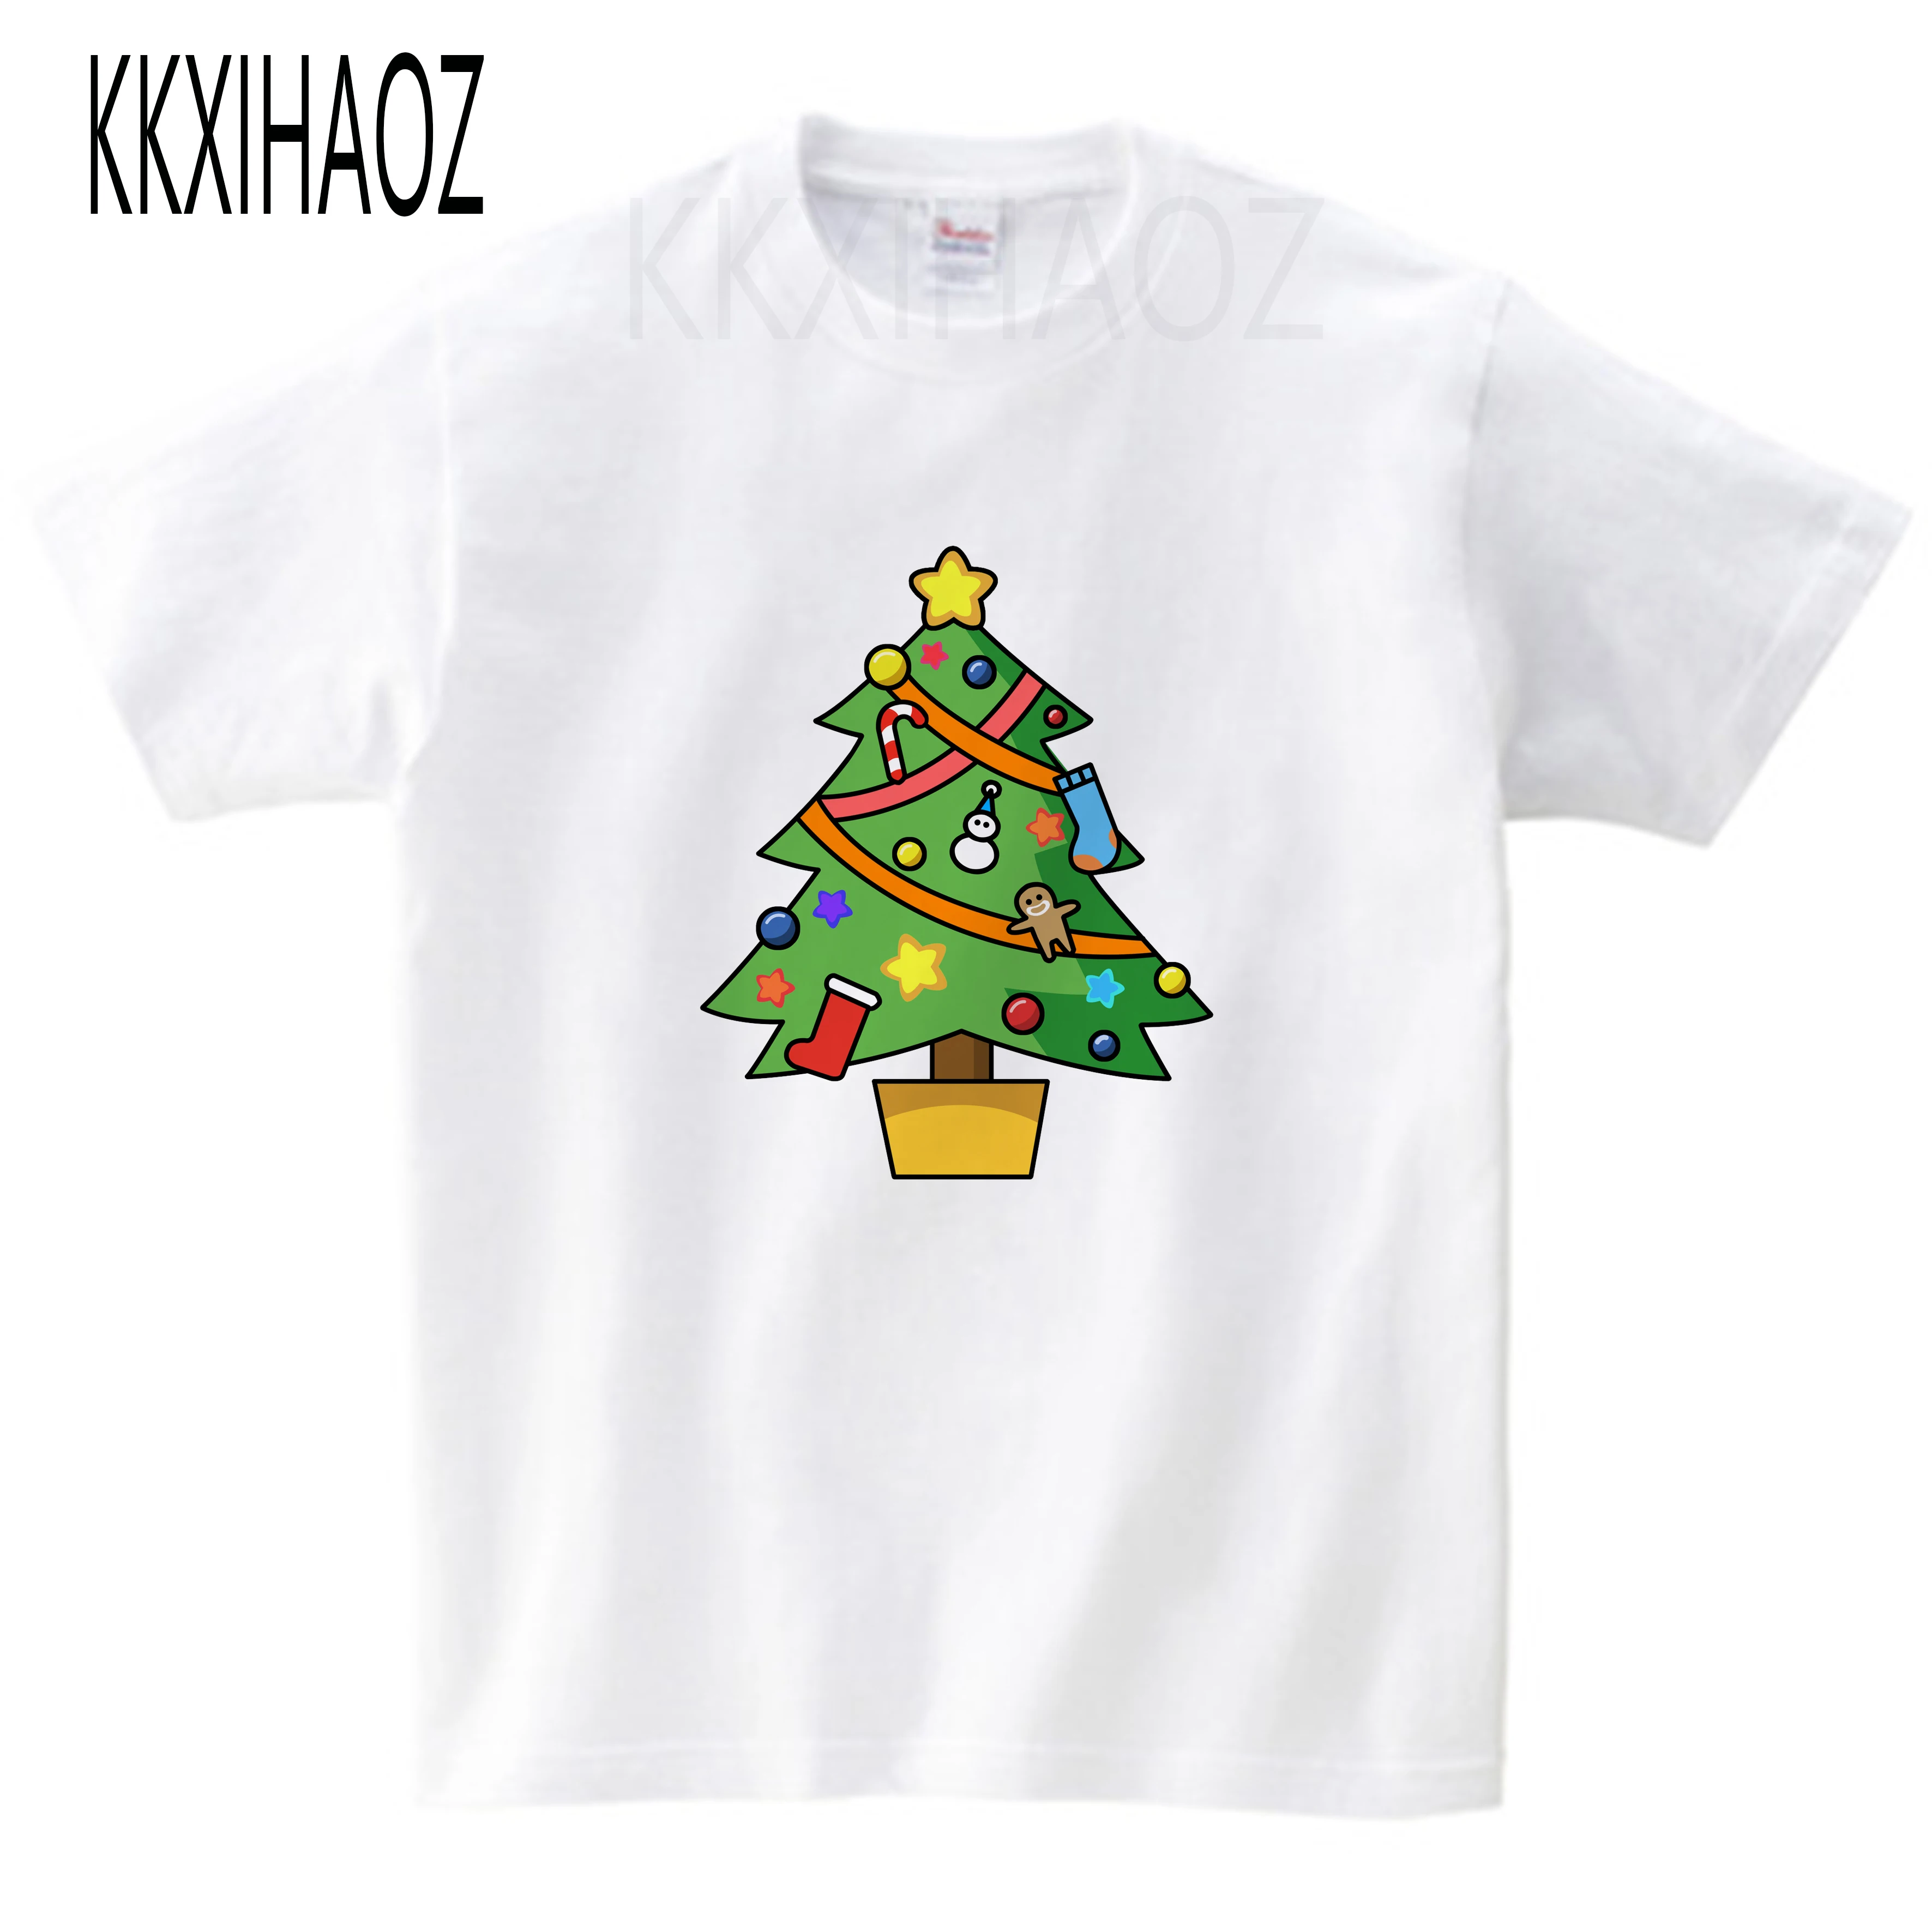 Футболка с рождественской елкой, Детская футболка, летняя Рождественская футболка с короткими рукавами для мальчиков и девочек, детская футболка, Милая футболка, 10